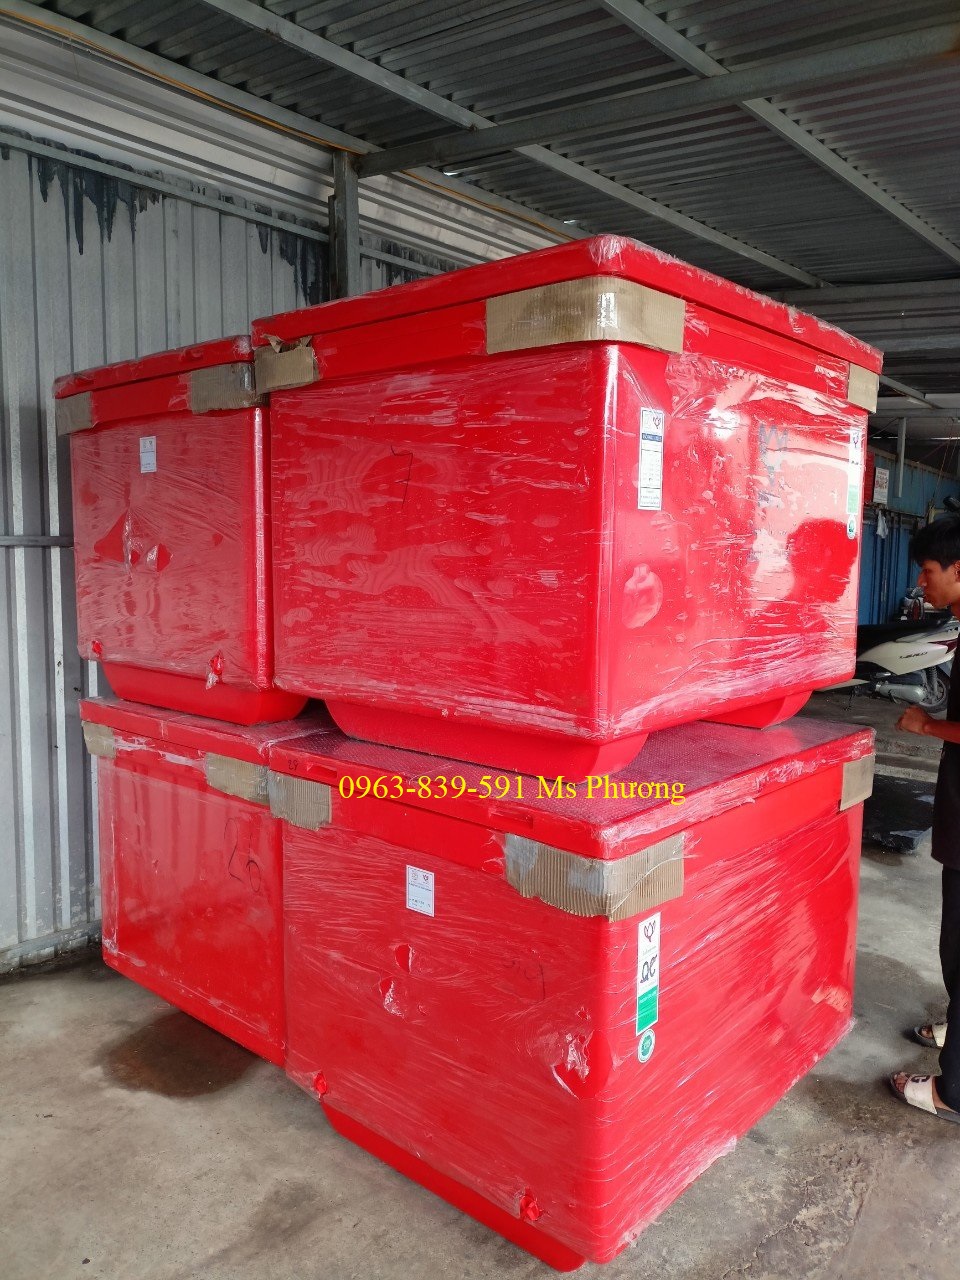 Thanh lý thùng giữ lạnh Thái Lan mới giá rẻ nhất thị trường